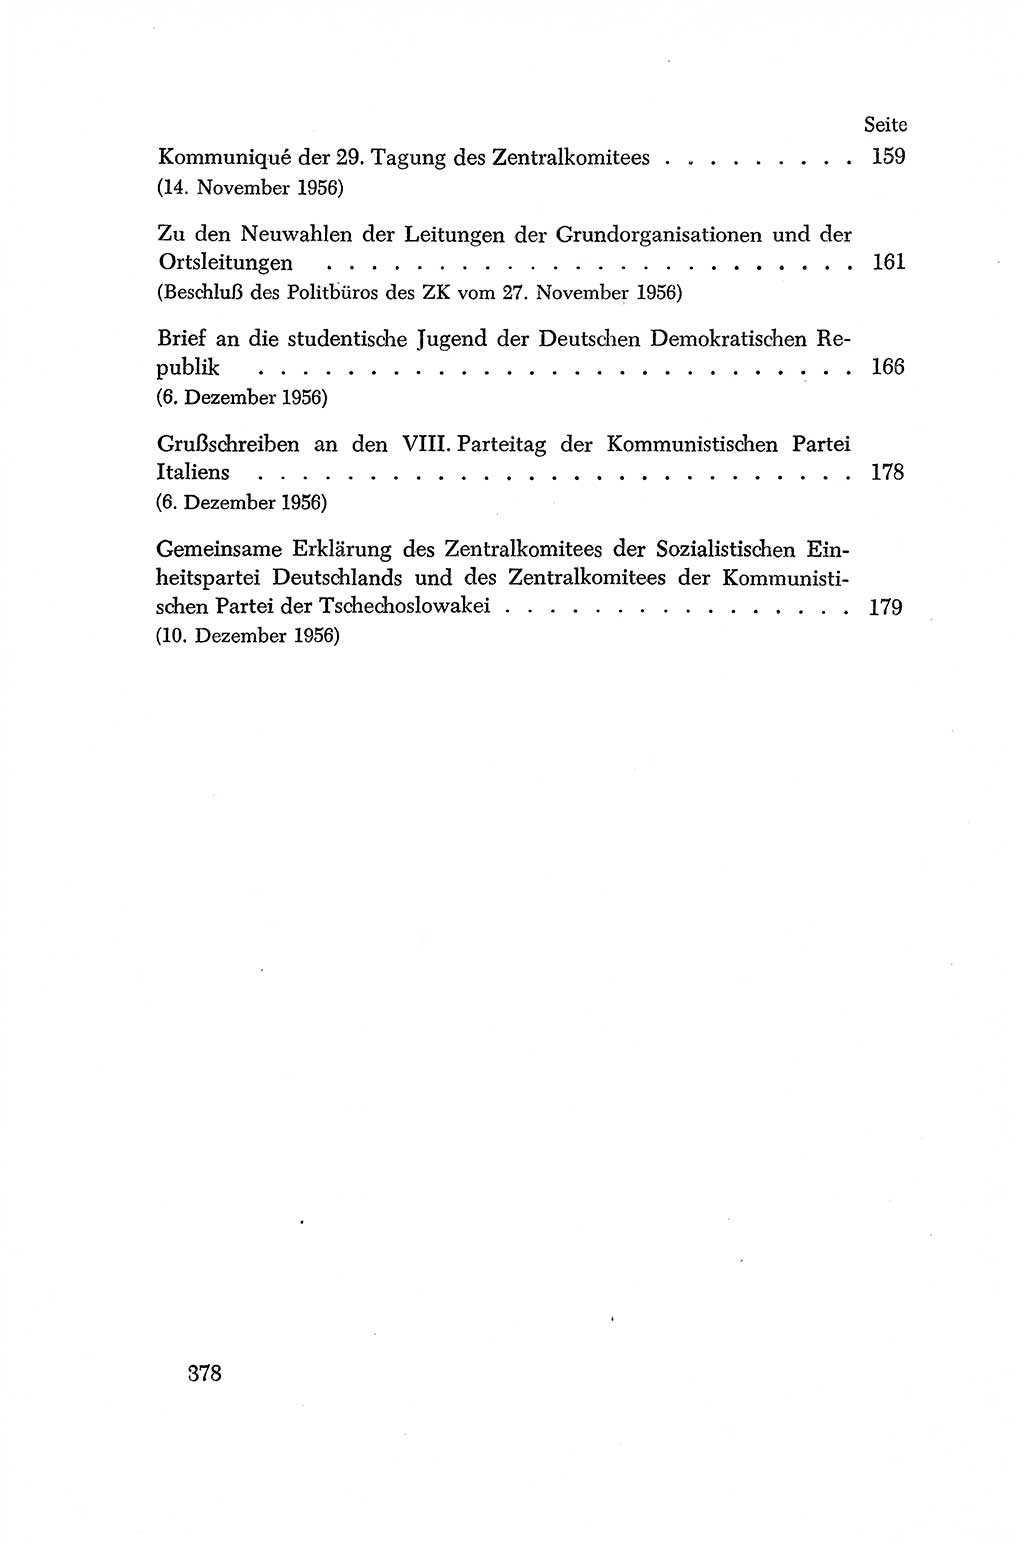 Dokumente der Sozialistischen Einheitspartei Deutschlands (SED) [Deutsche Demokratische Republik (DDR)] 1956-1957, Seite 378 (Dok. SED DDR 1956-1957, S. 378)